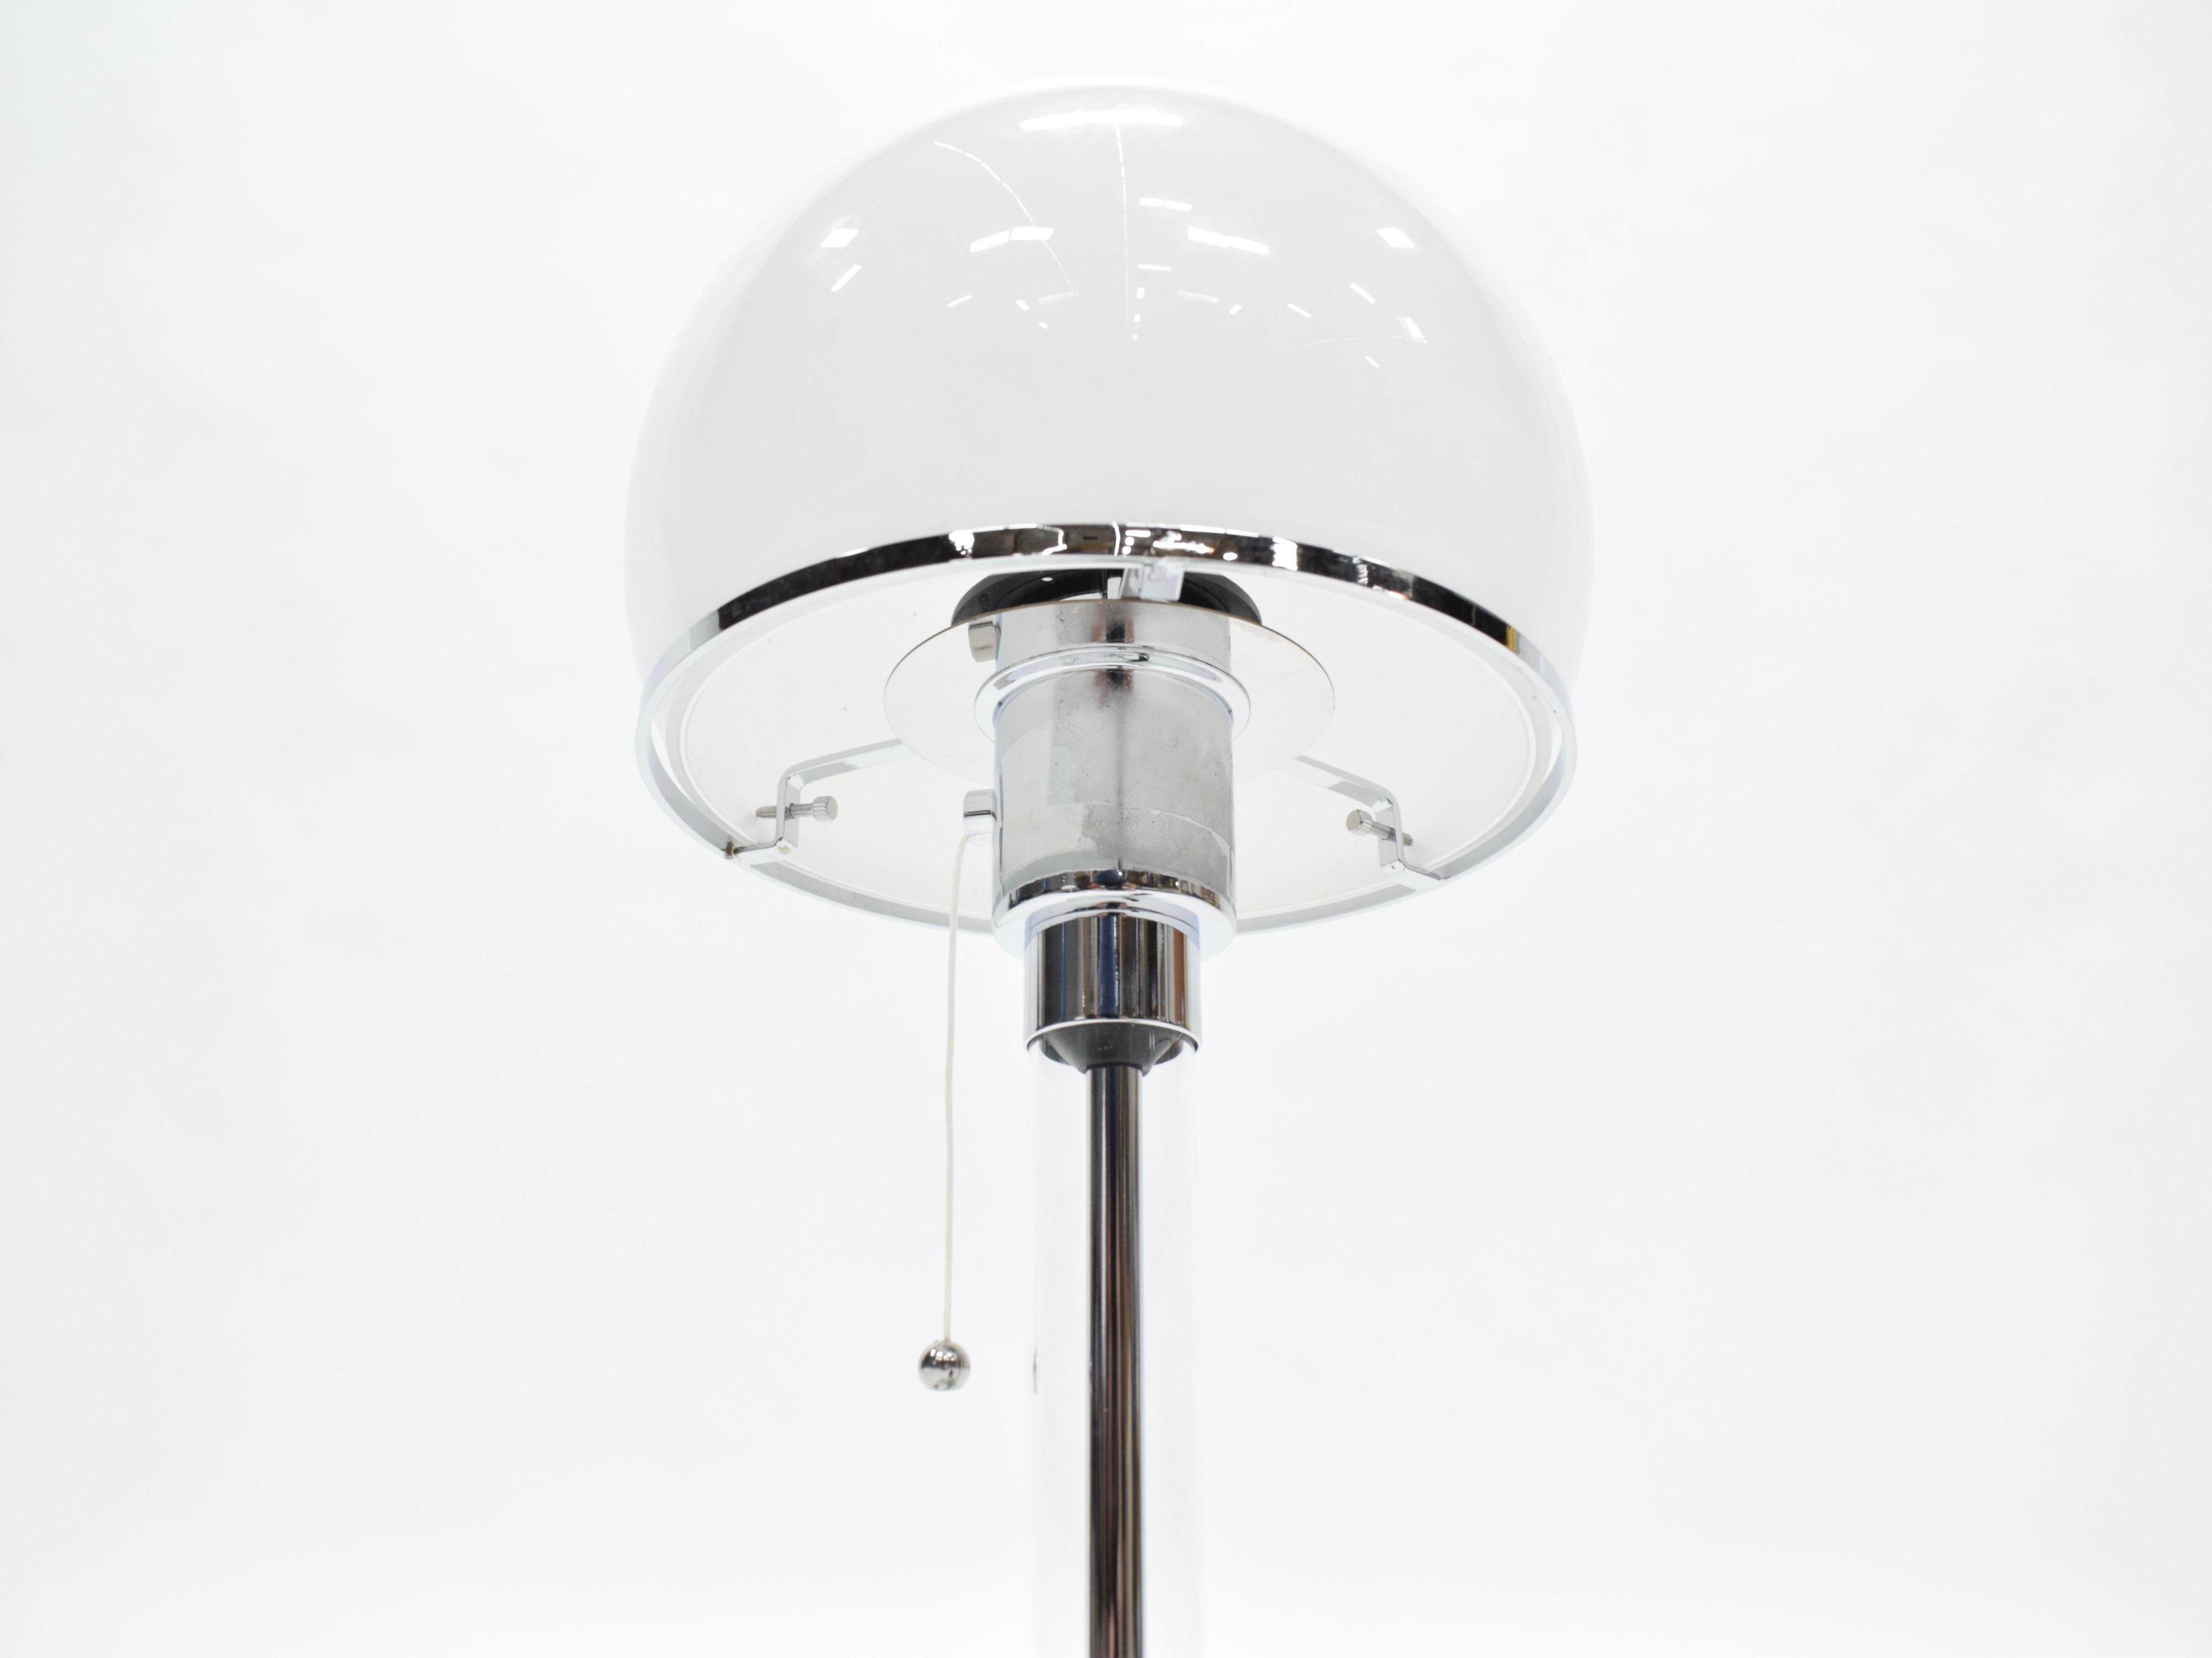 Lampe de table Bauhaus en chrome et verre, créée par le designer allemand Wilhelm Wagenfeld pour Tecnolume dans les années 1920. Les lampes ont été câblées pour des prises de courant américaines et fonctionnent avec des ampoules ordinaires de 75w